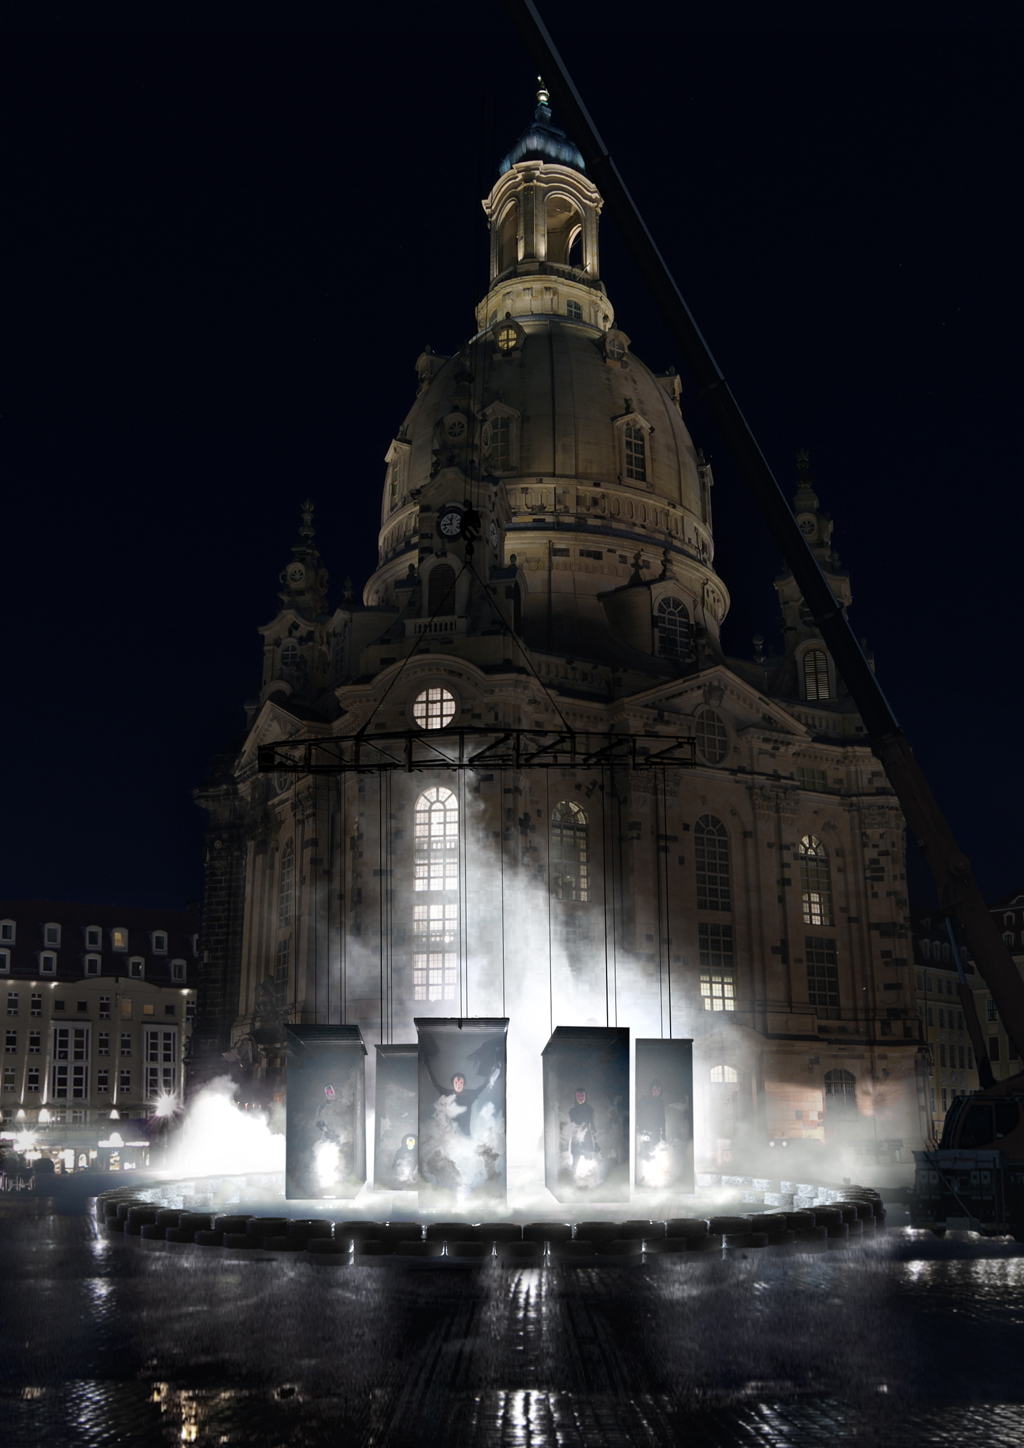 Blick auf die Kunstinstallation Kami auf dem Dresdner Neumarkt vor der Frauenkirche. An einem Kran befestigt schweben fünf menschengroße Figuren, die von Tränengas umhüllt scheinen. Die Installation zeigt Charaktere aus Protestbewegungen der letzten Jahre, die zu Medienikonen wurden.